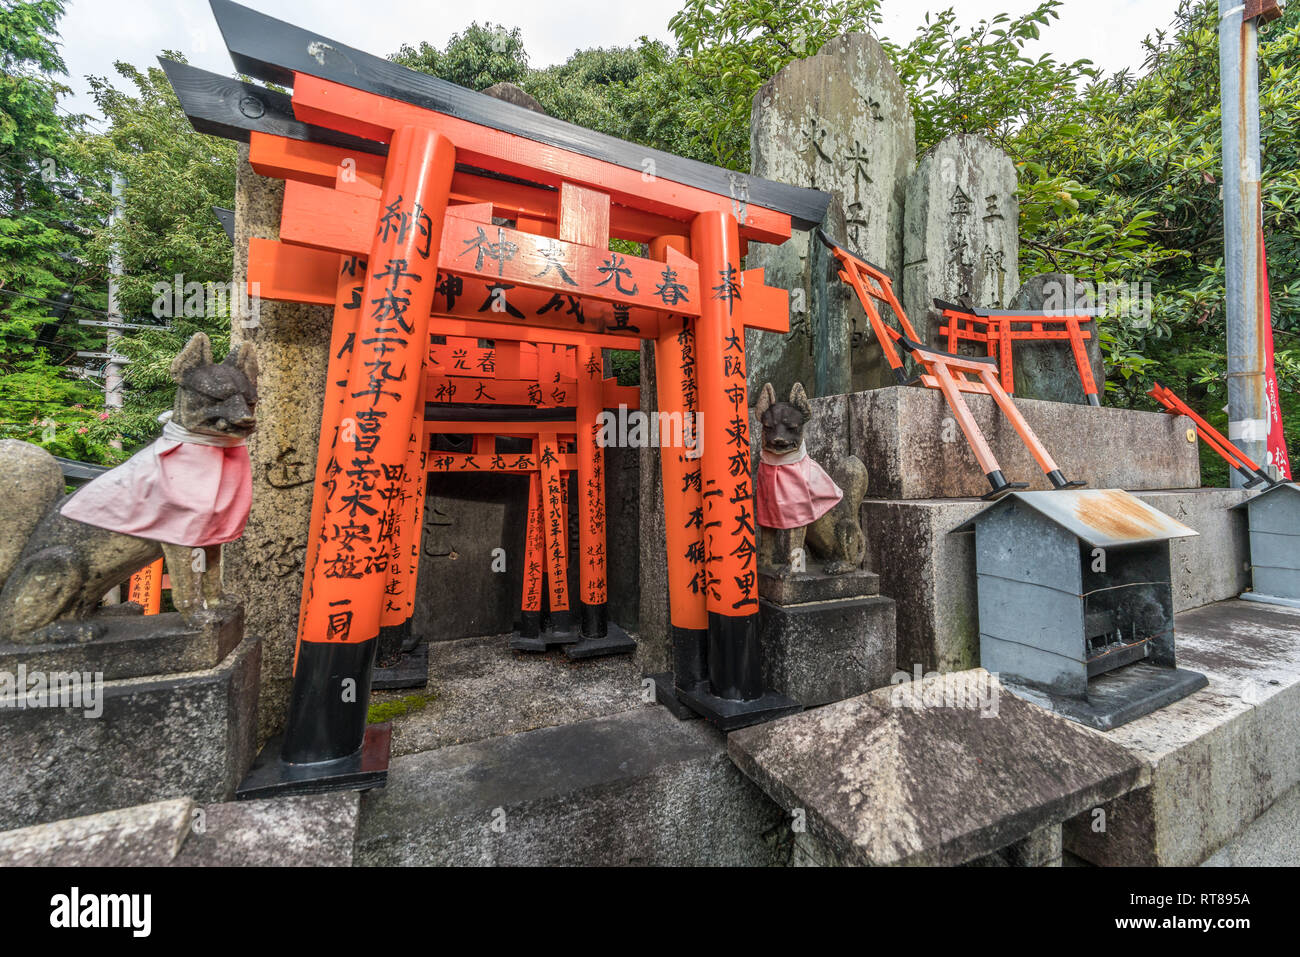 Fushimi-ku, Kyoto, Japan - August 23, 2017 : Shunkou Ogami Otsuka (worshiping stones engraved with deities names) at Sannomine (Shimosha Shinseki) are Stock Photo